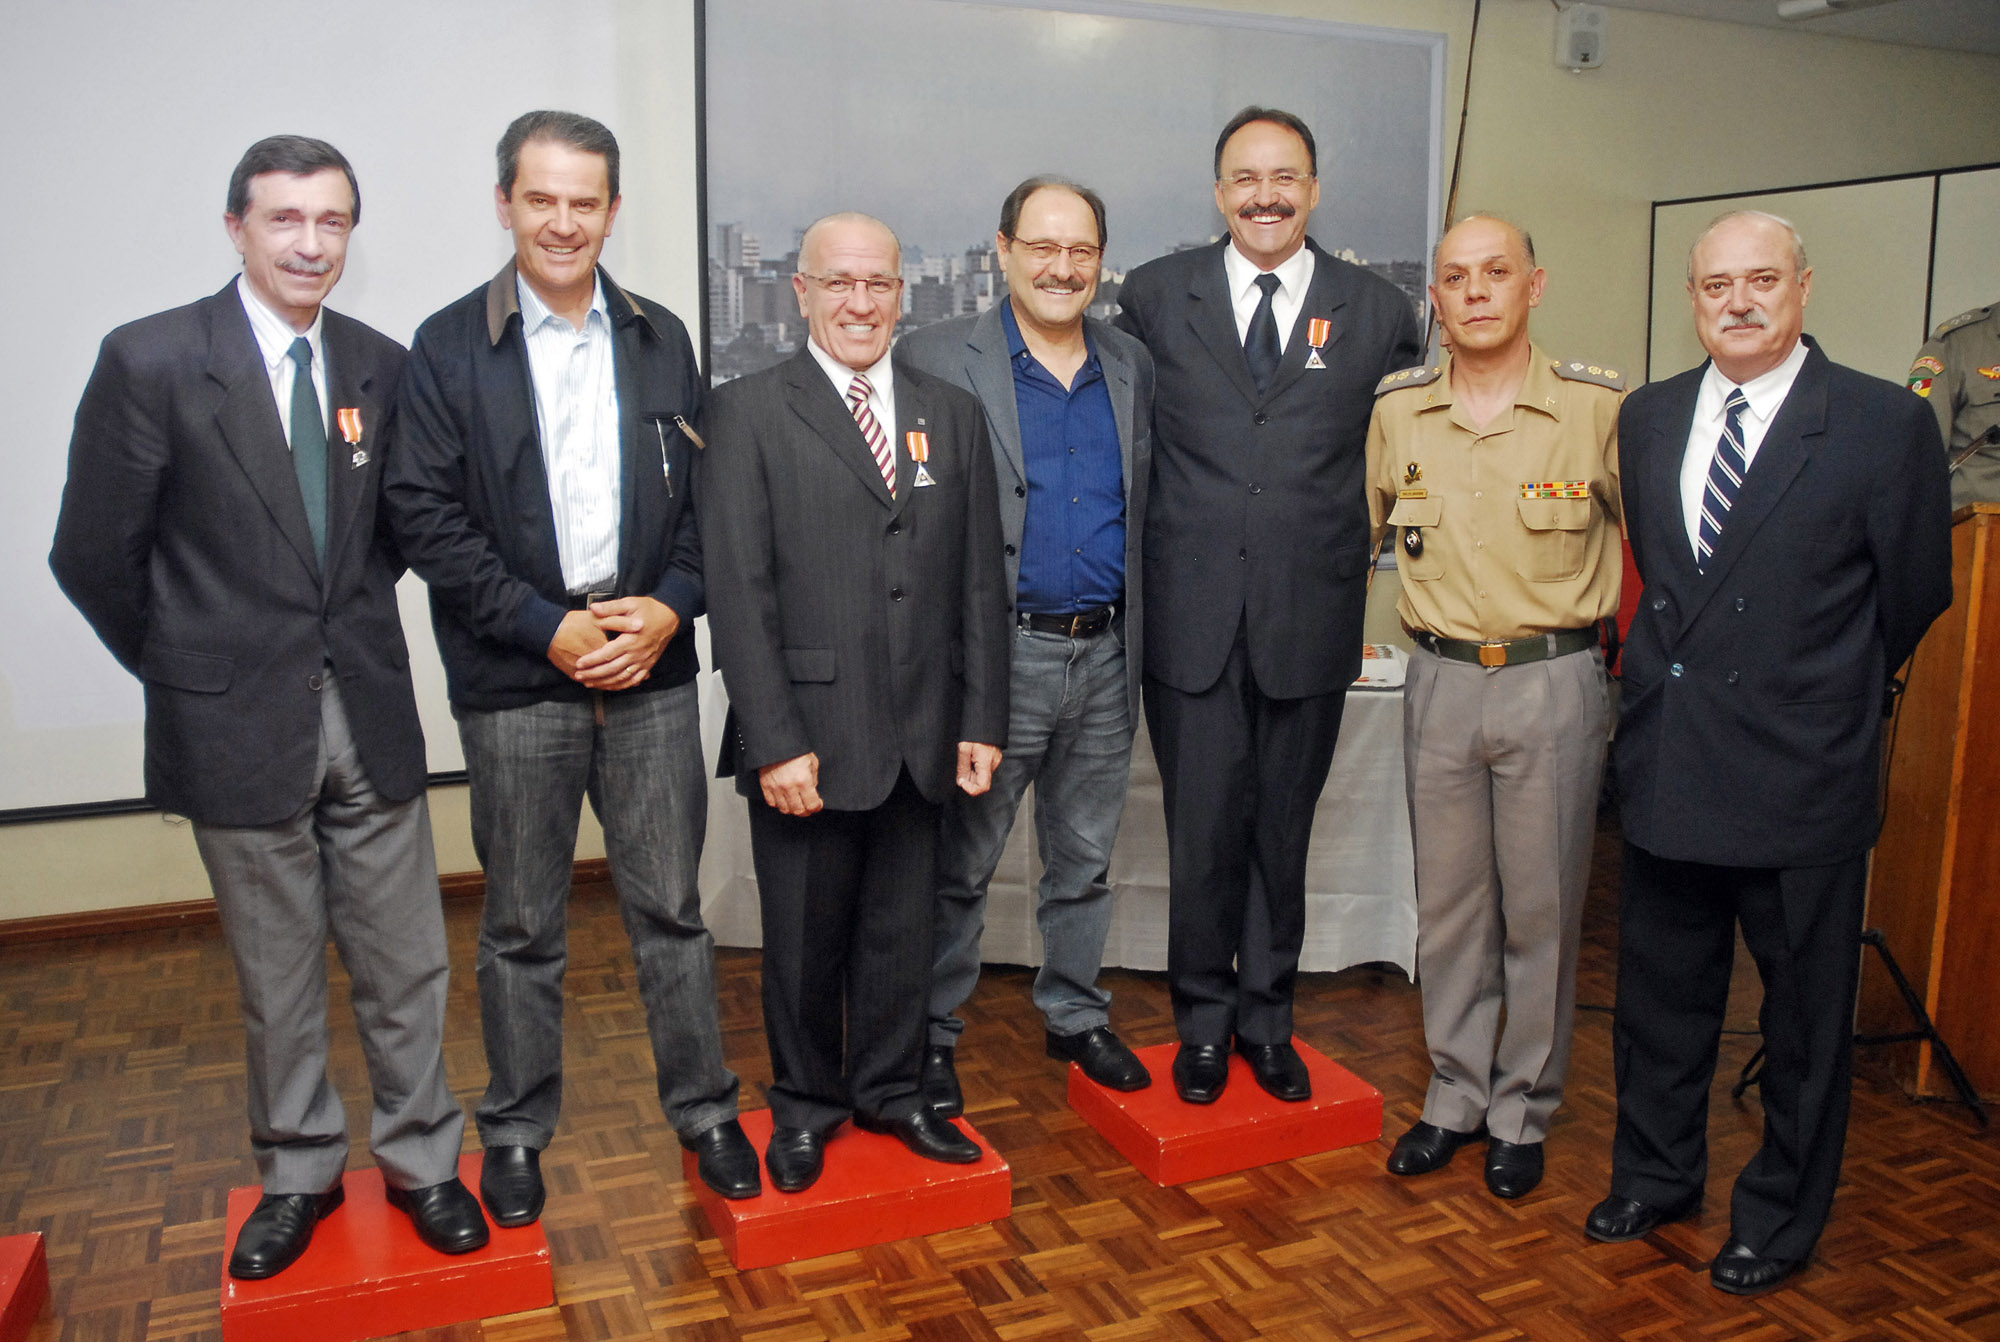 Mauro destaca a entrega de medalhas da Defesa Civil de Caxias do Sul